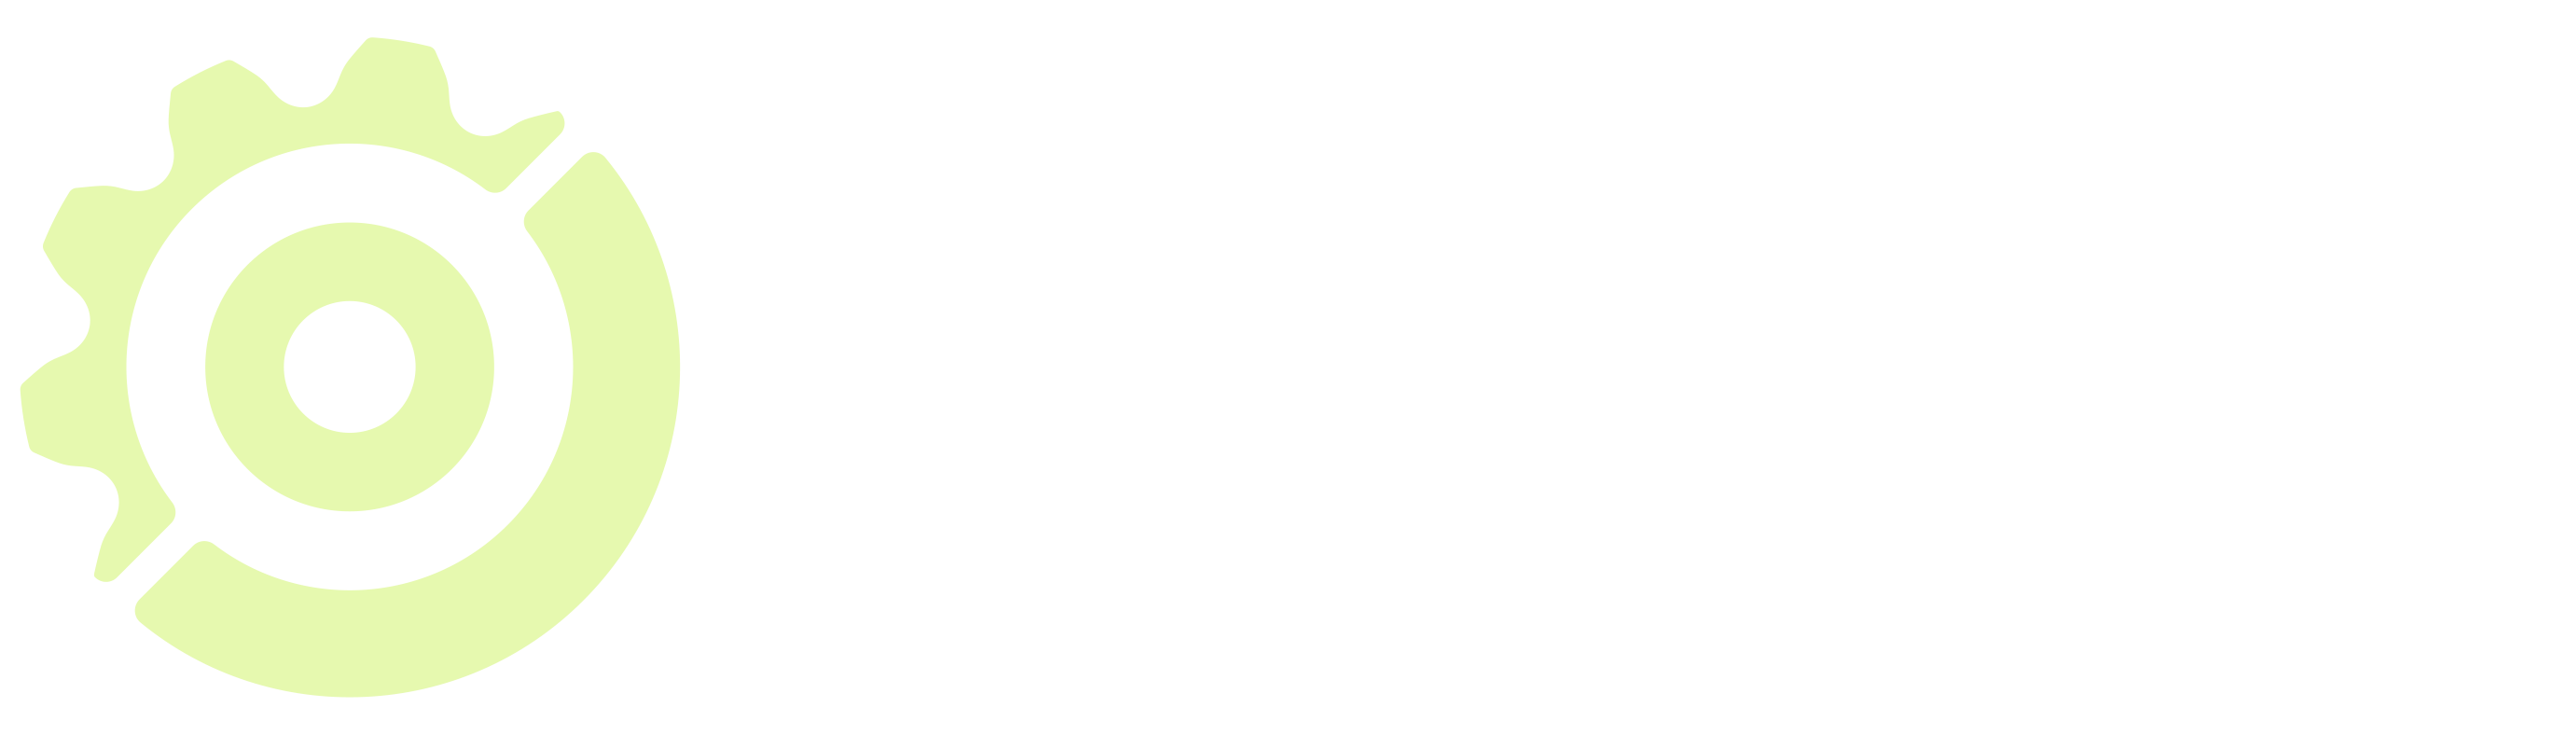 Evolvent Discs